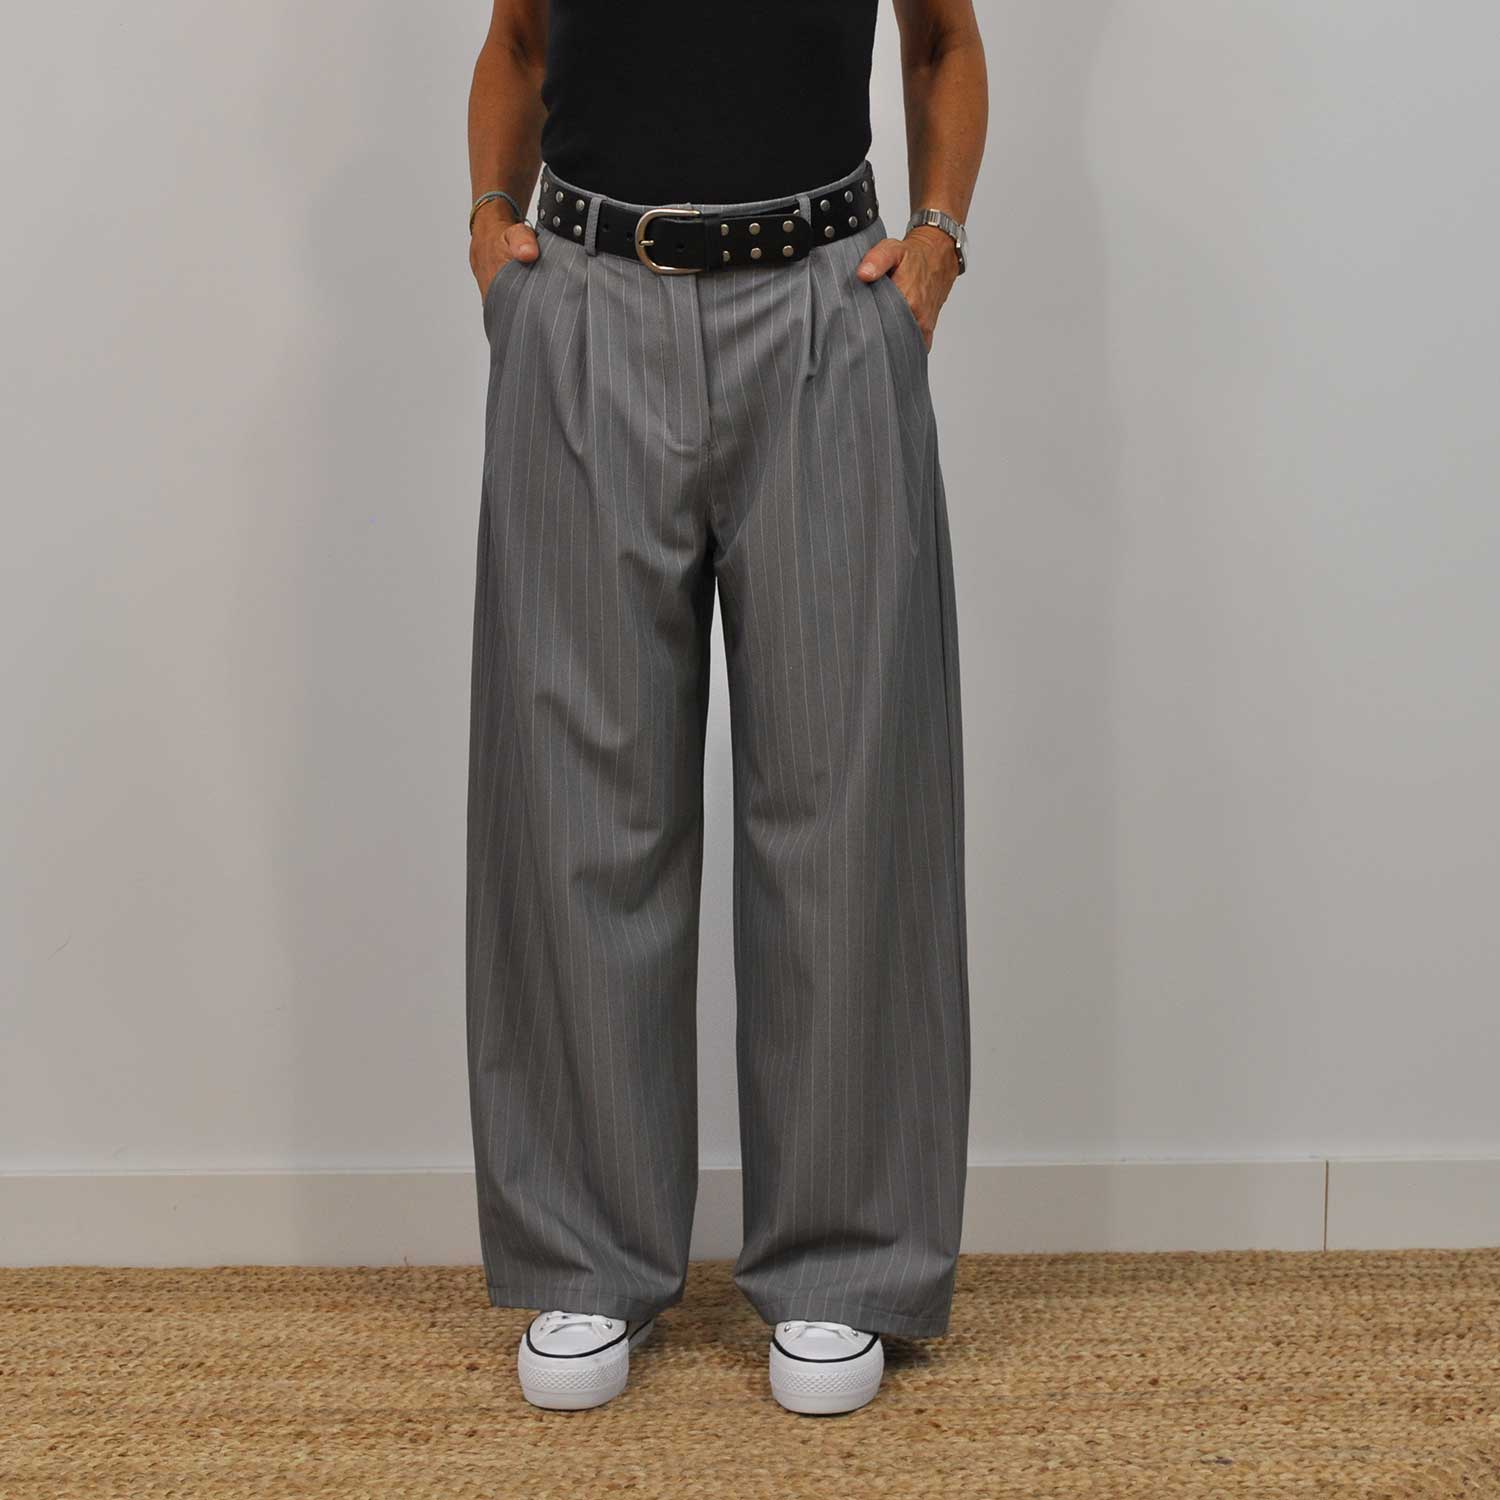 Gray pinstripe pants